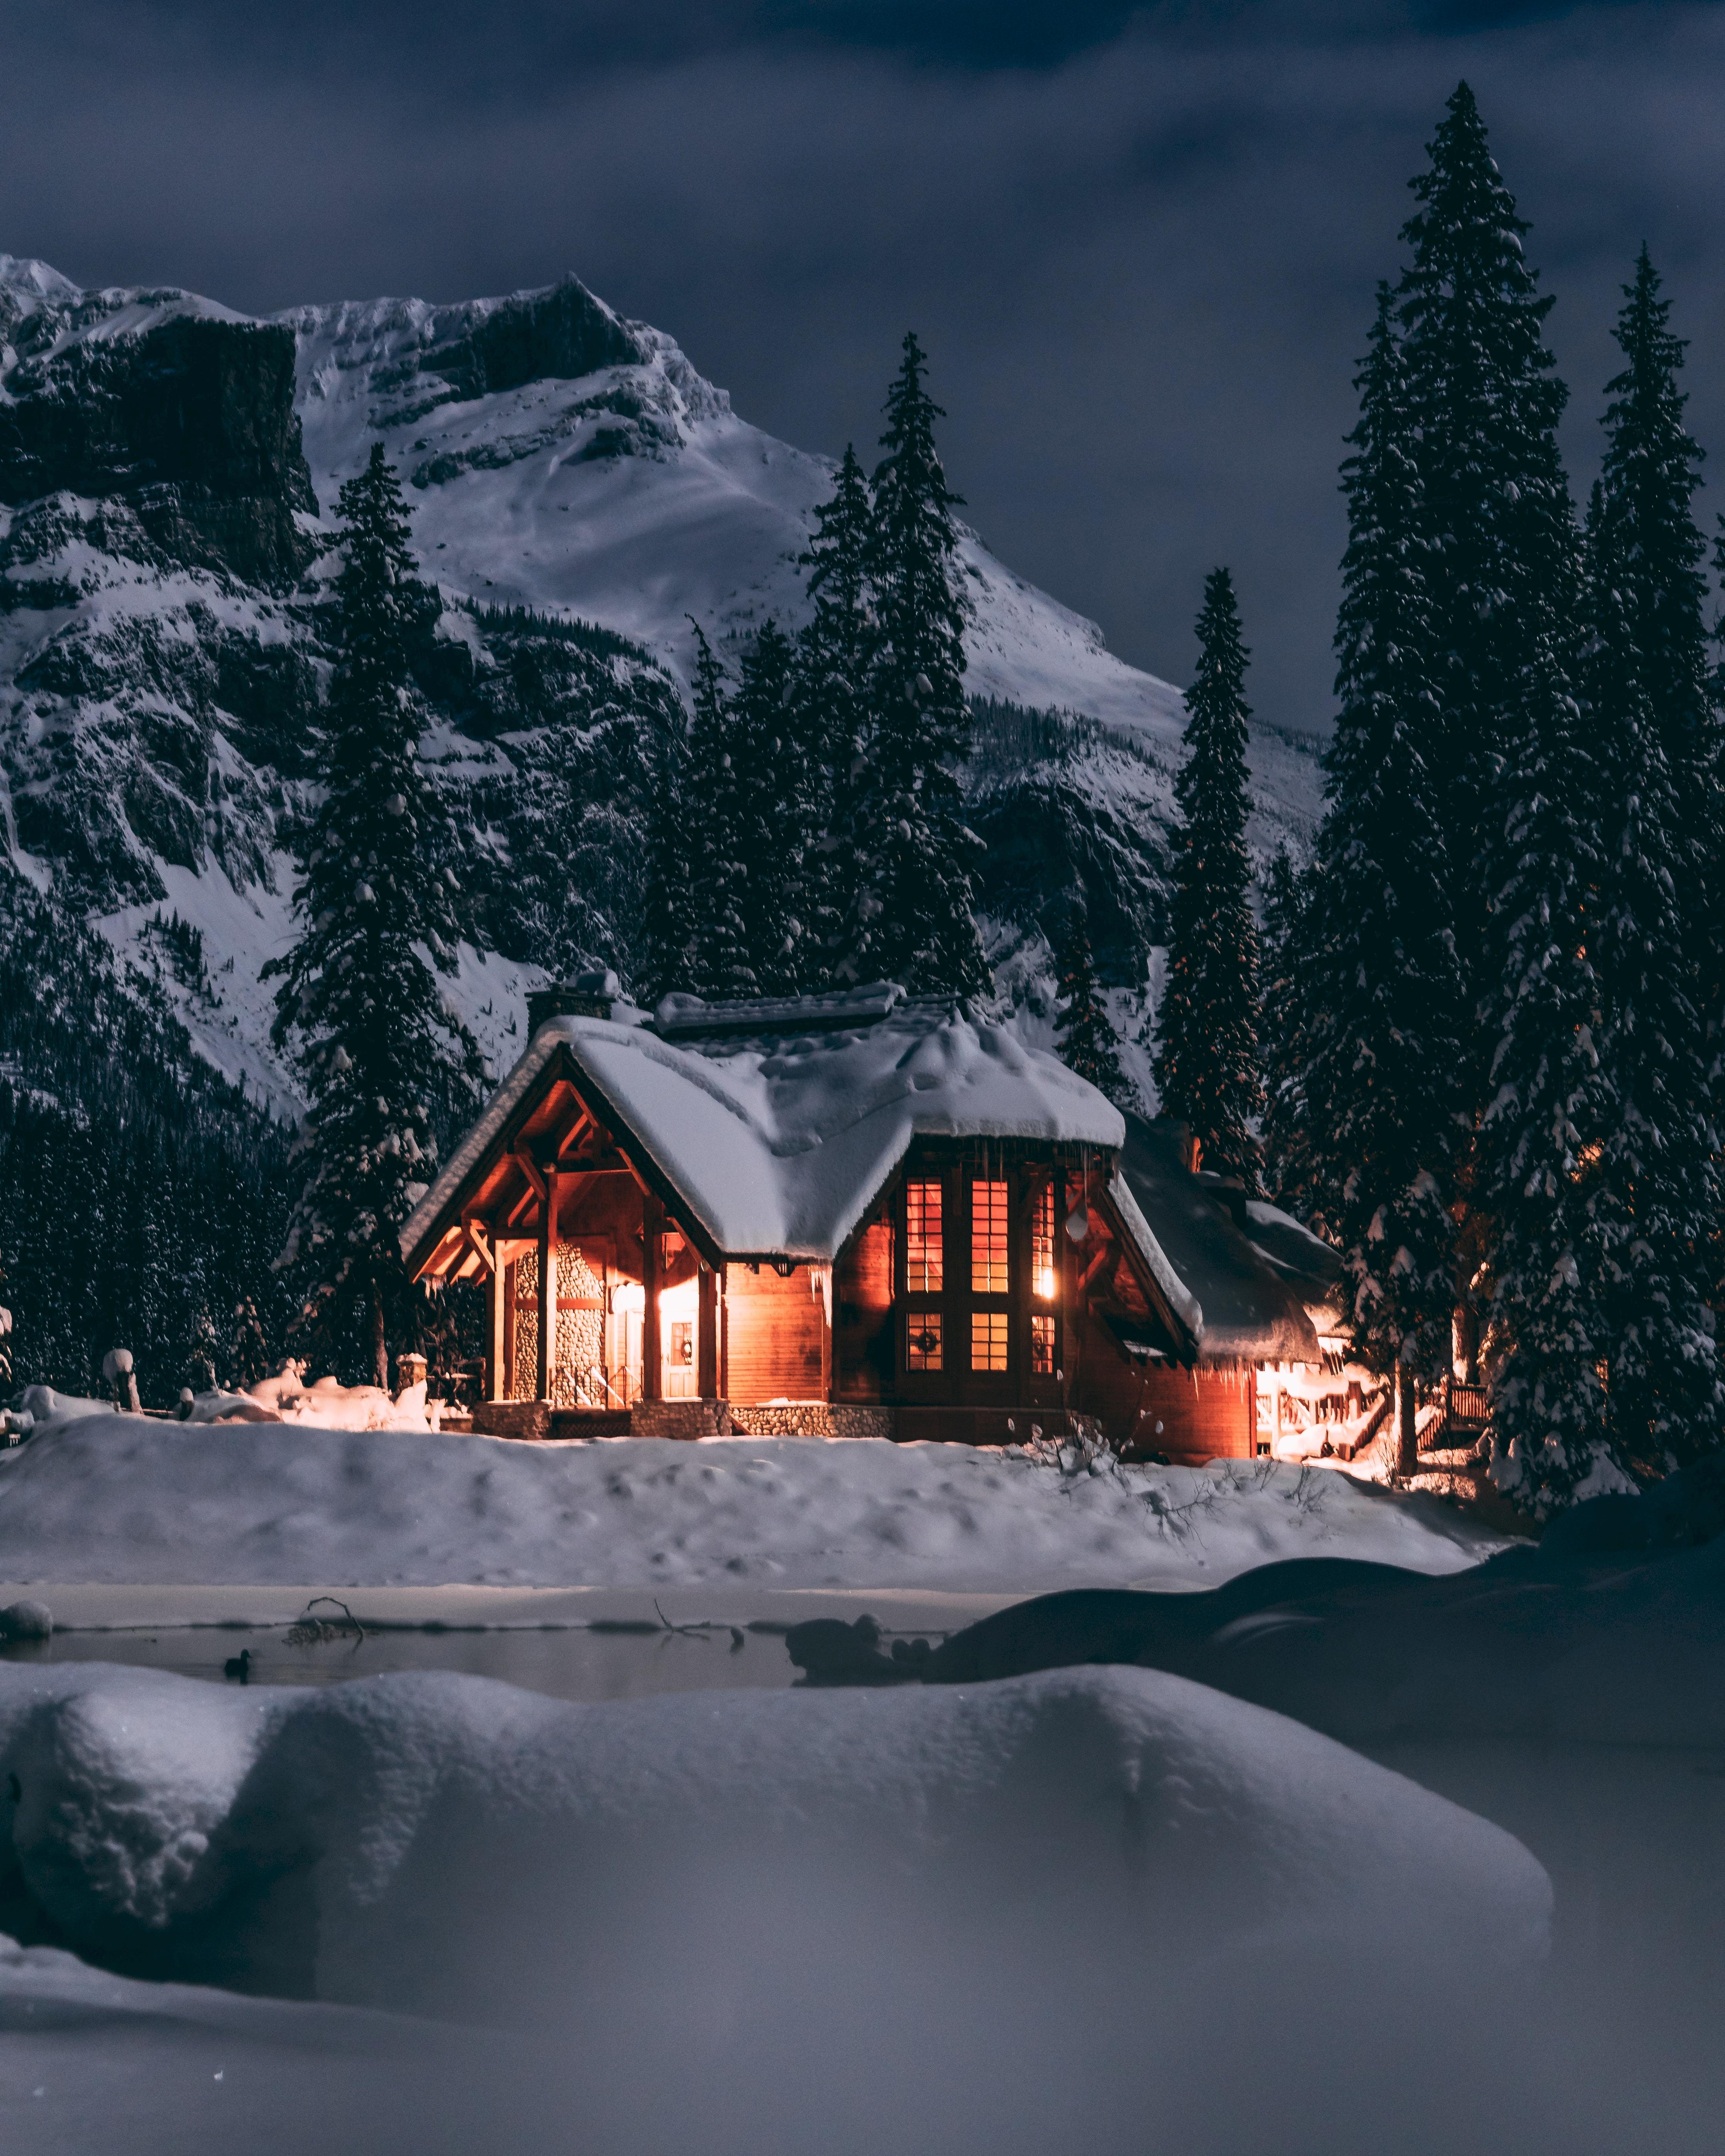 Лучшие фото (60 000+) по запросу «Зима» · Скачивайте совершенно бесплатно ·  Стоковые фото Pexels